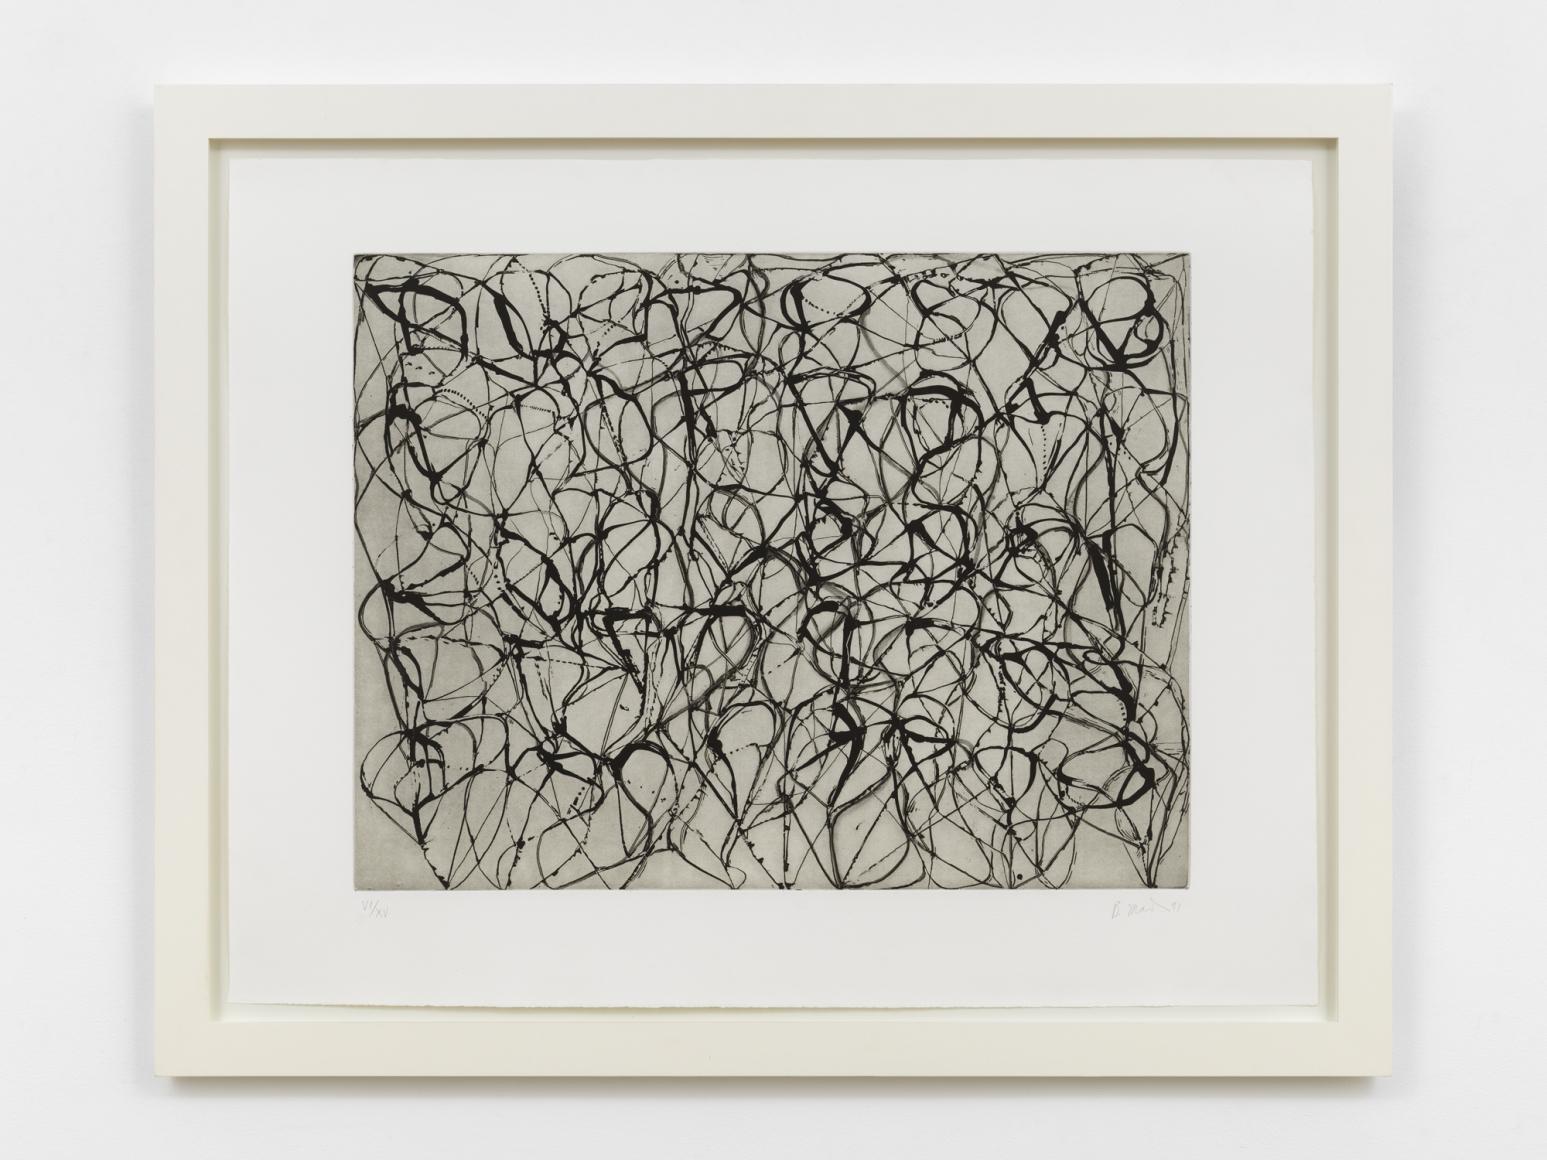 Brice Marden Abstract Print - Zen Studies 1-6: Plate 3